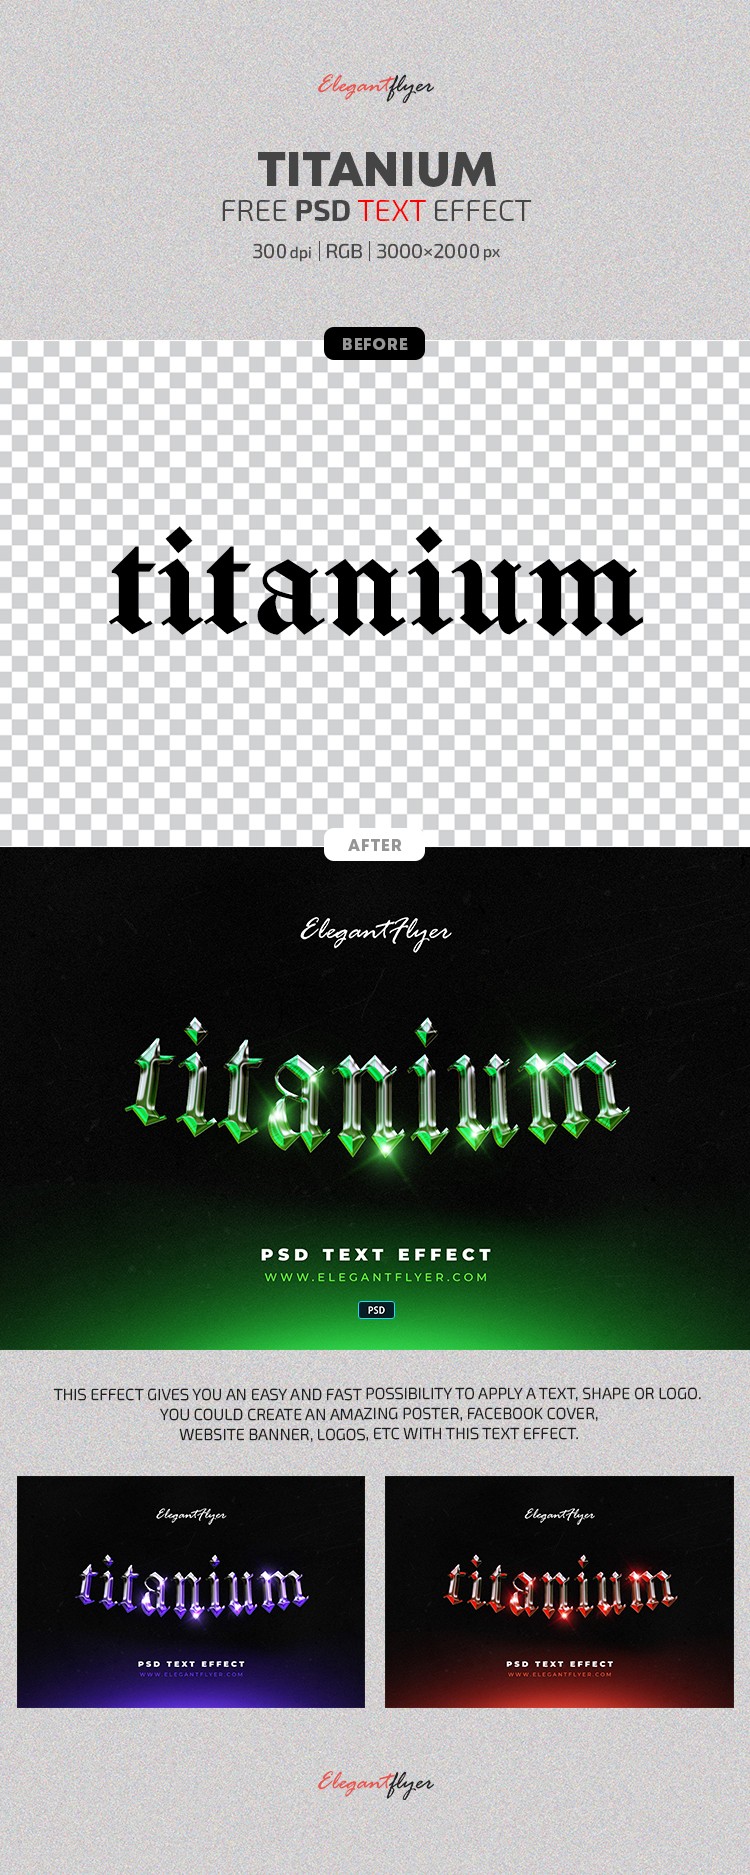 Effetto testo in titanio by ElegantFlyer